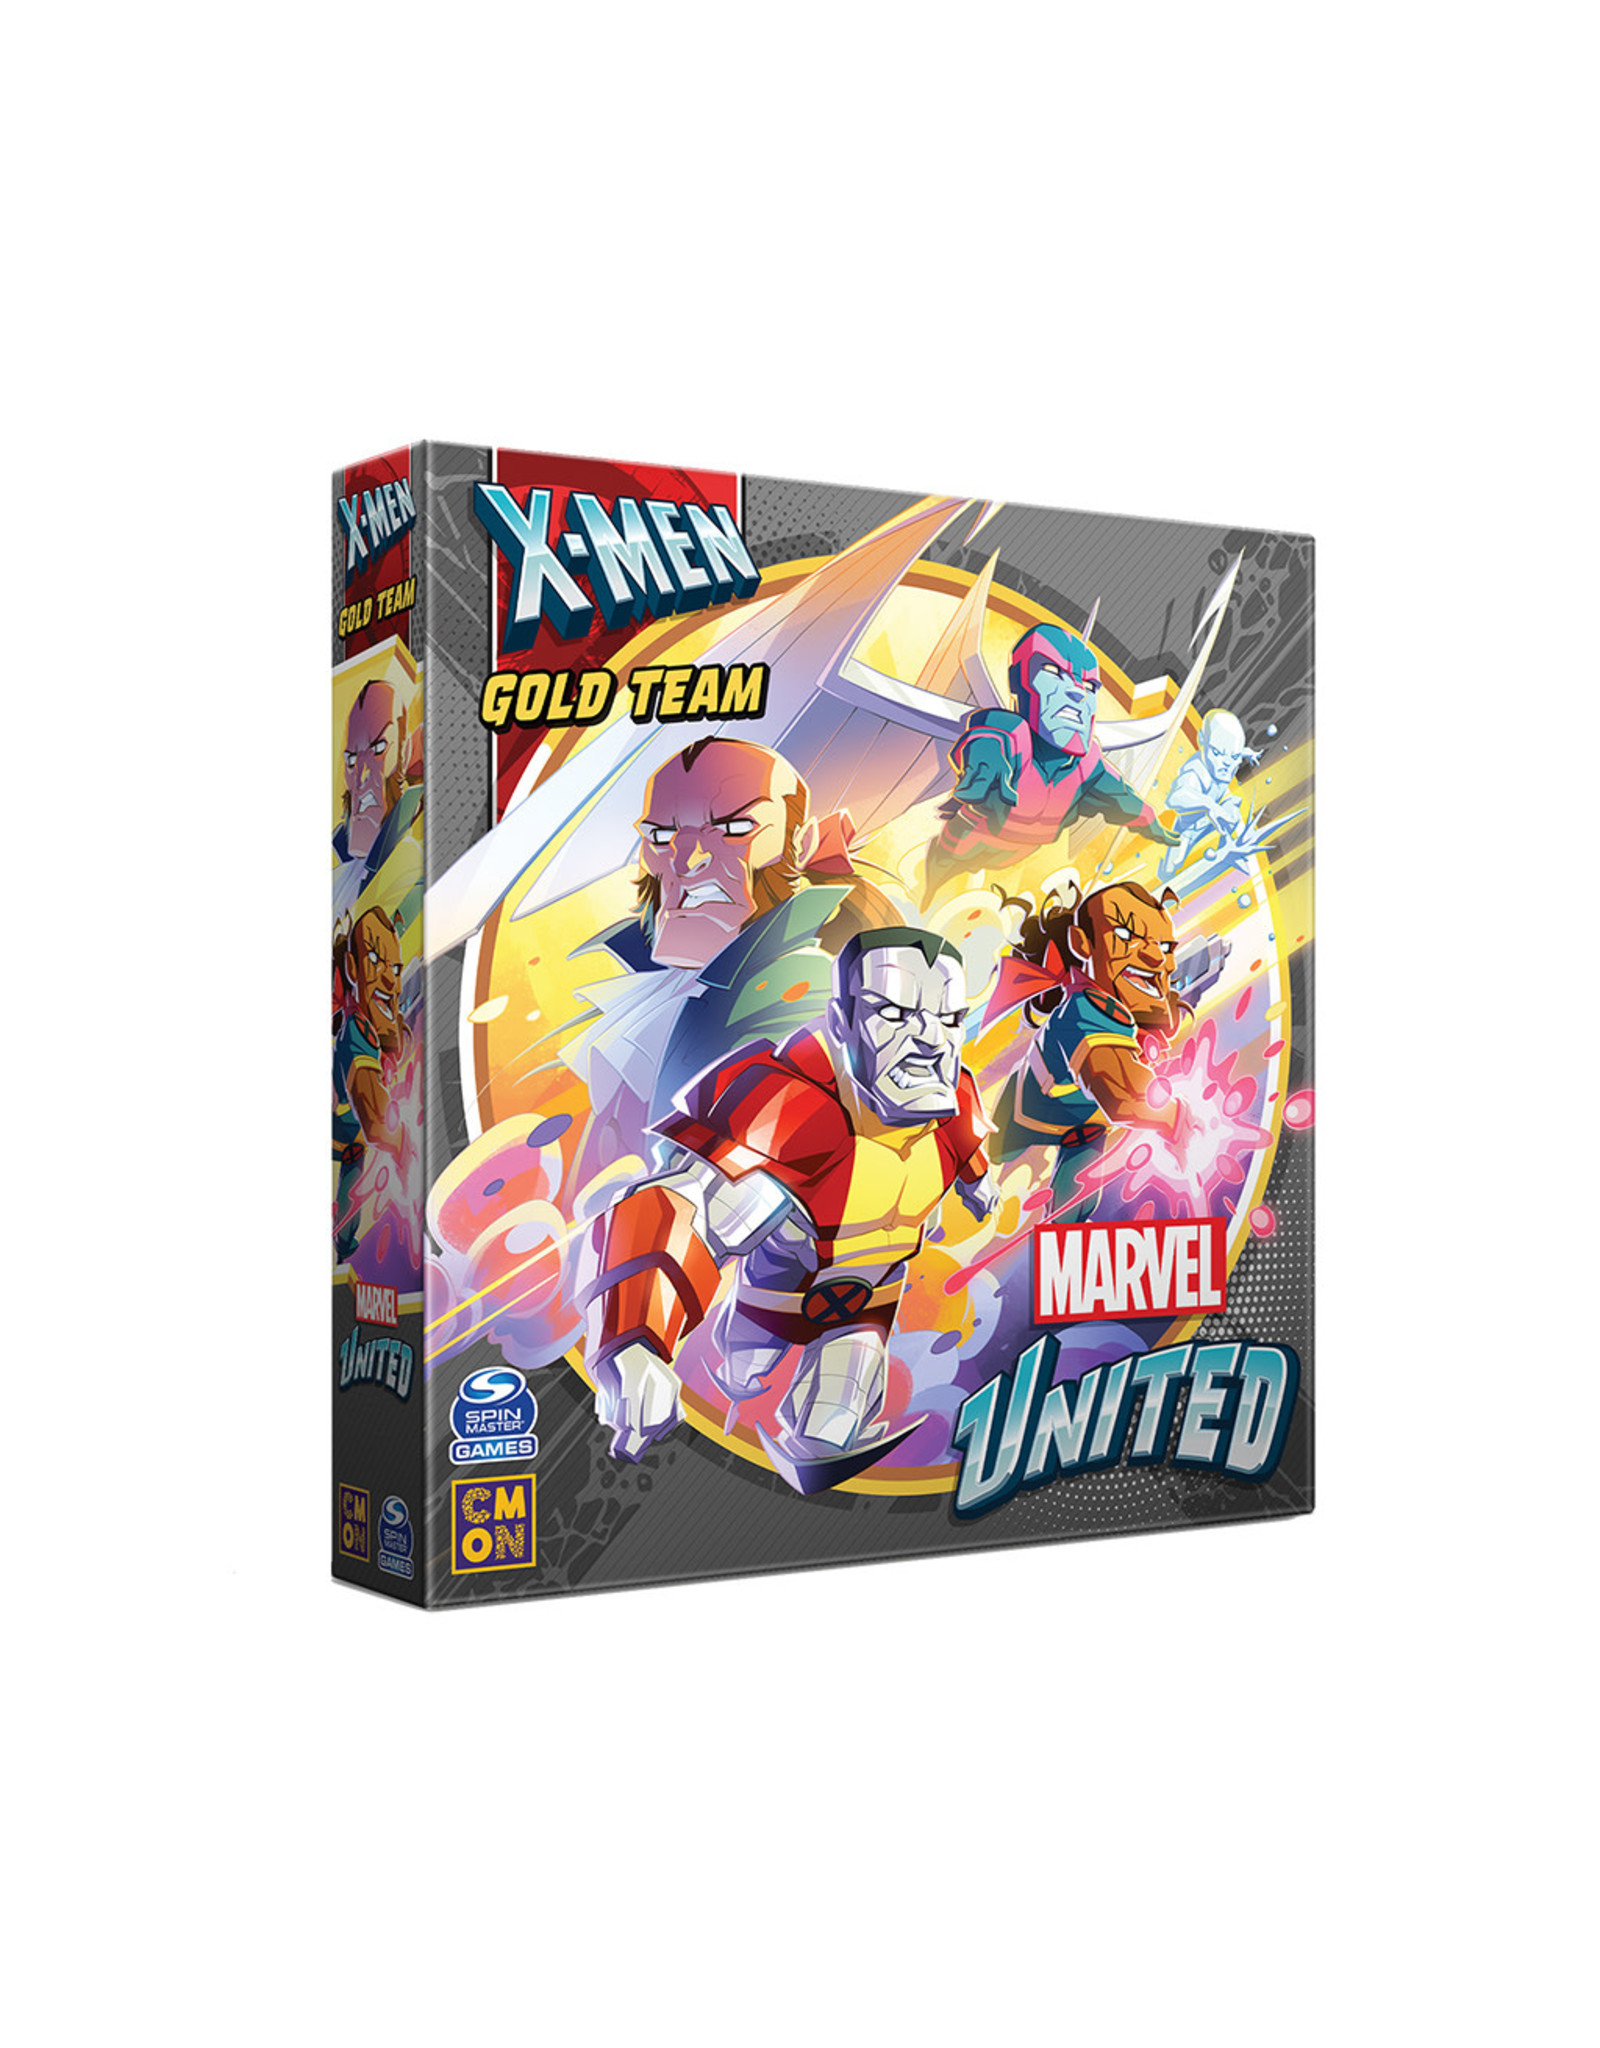 CMON Marvel United X-Men: Gold Team